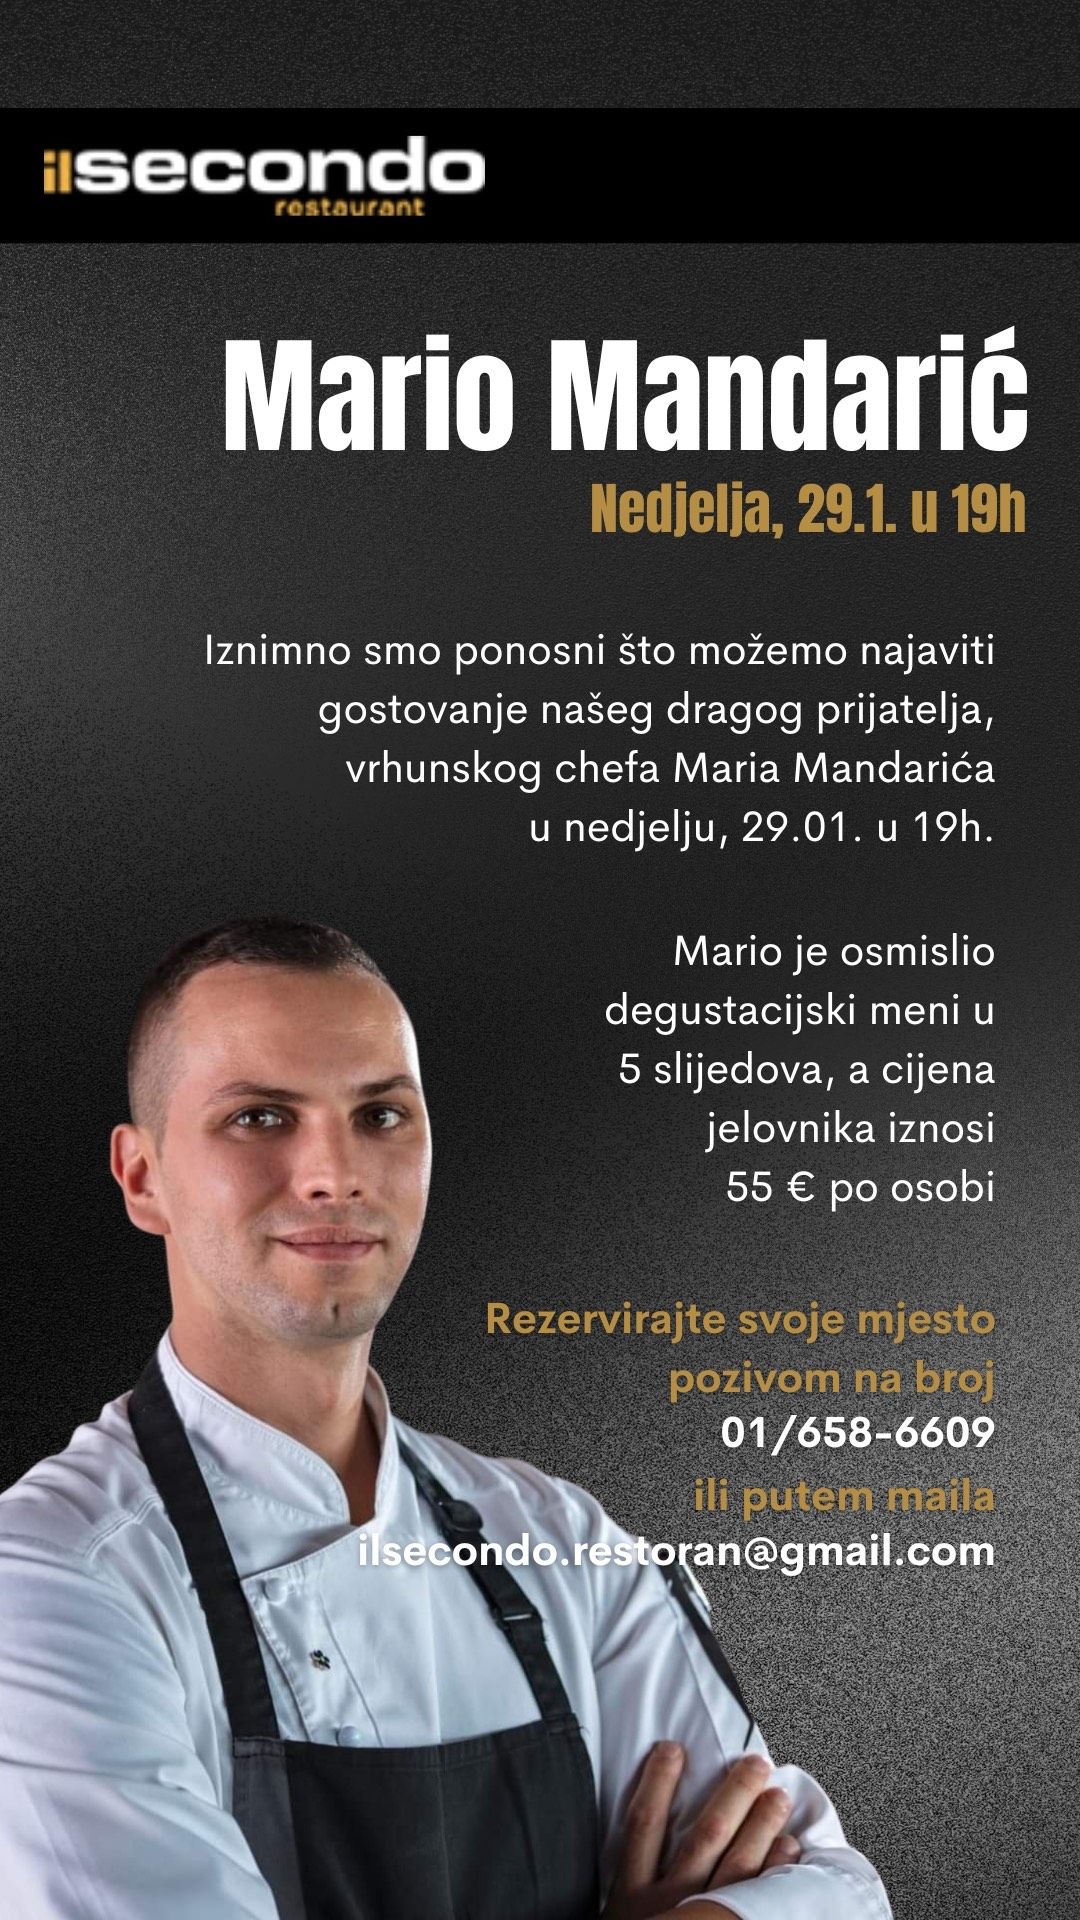 Mario Mandarić, Il Secondo